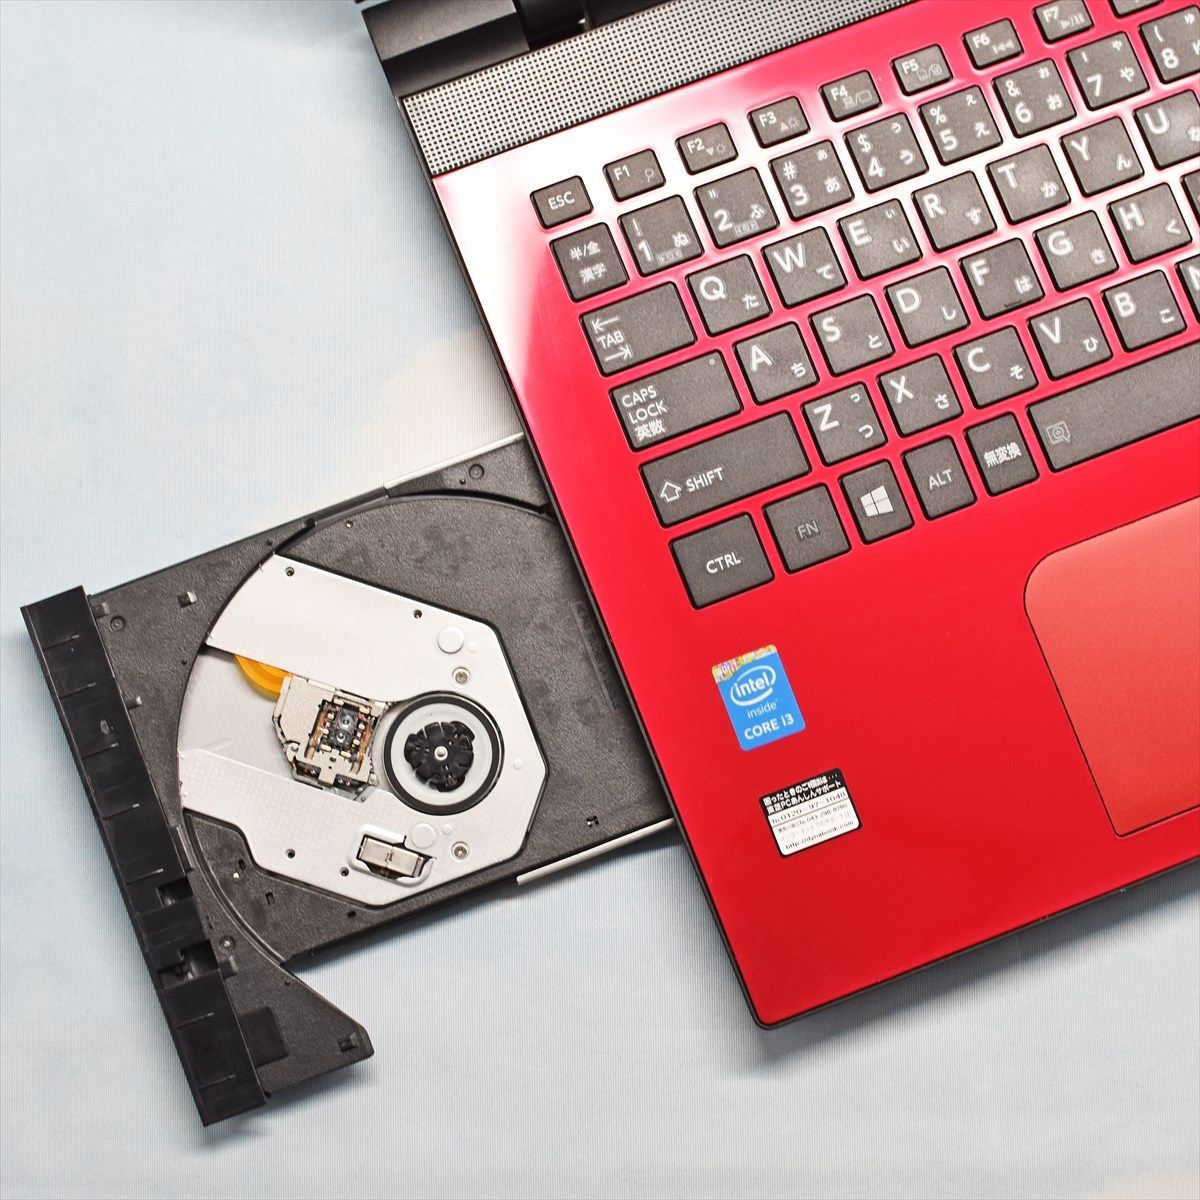 正規品低価薄型すぐ使える️赤ノートパソコン大容量500GB️WEBカメラ初心者向け Windowsノート本体